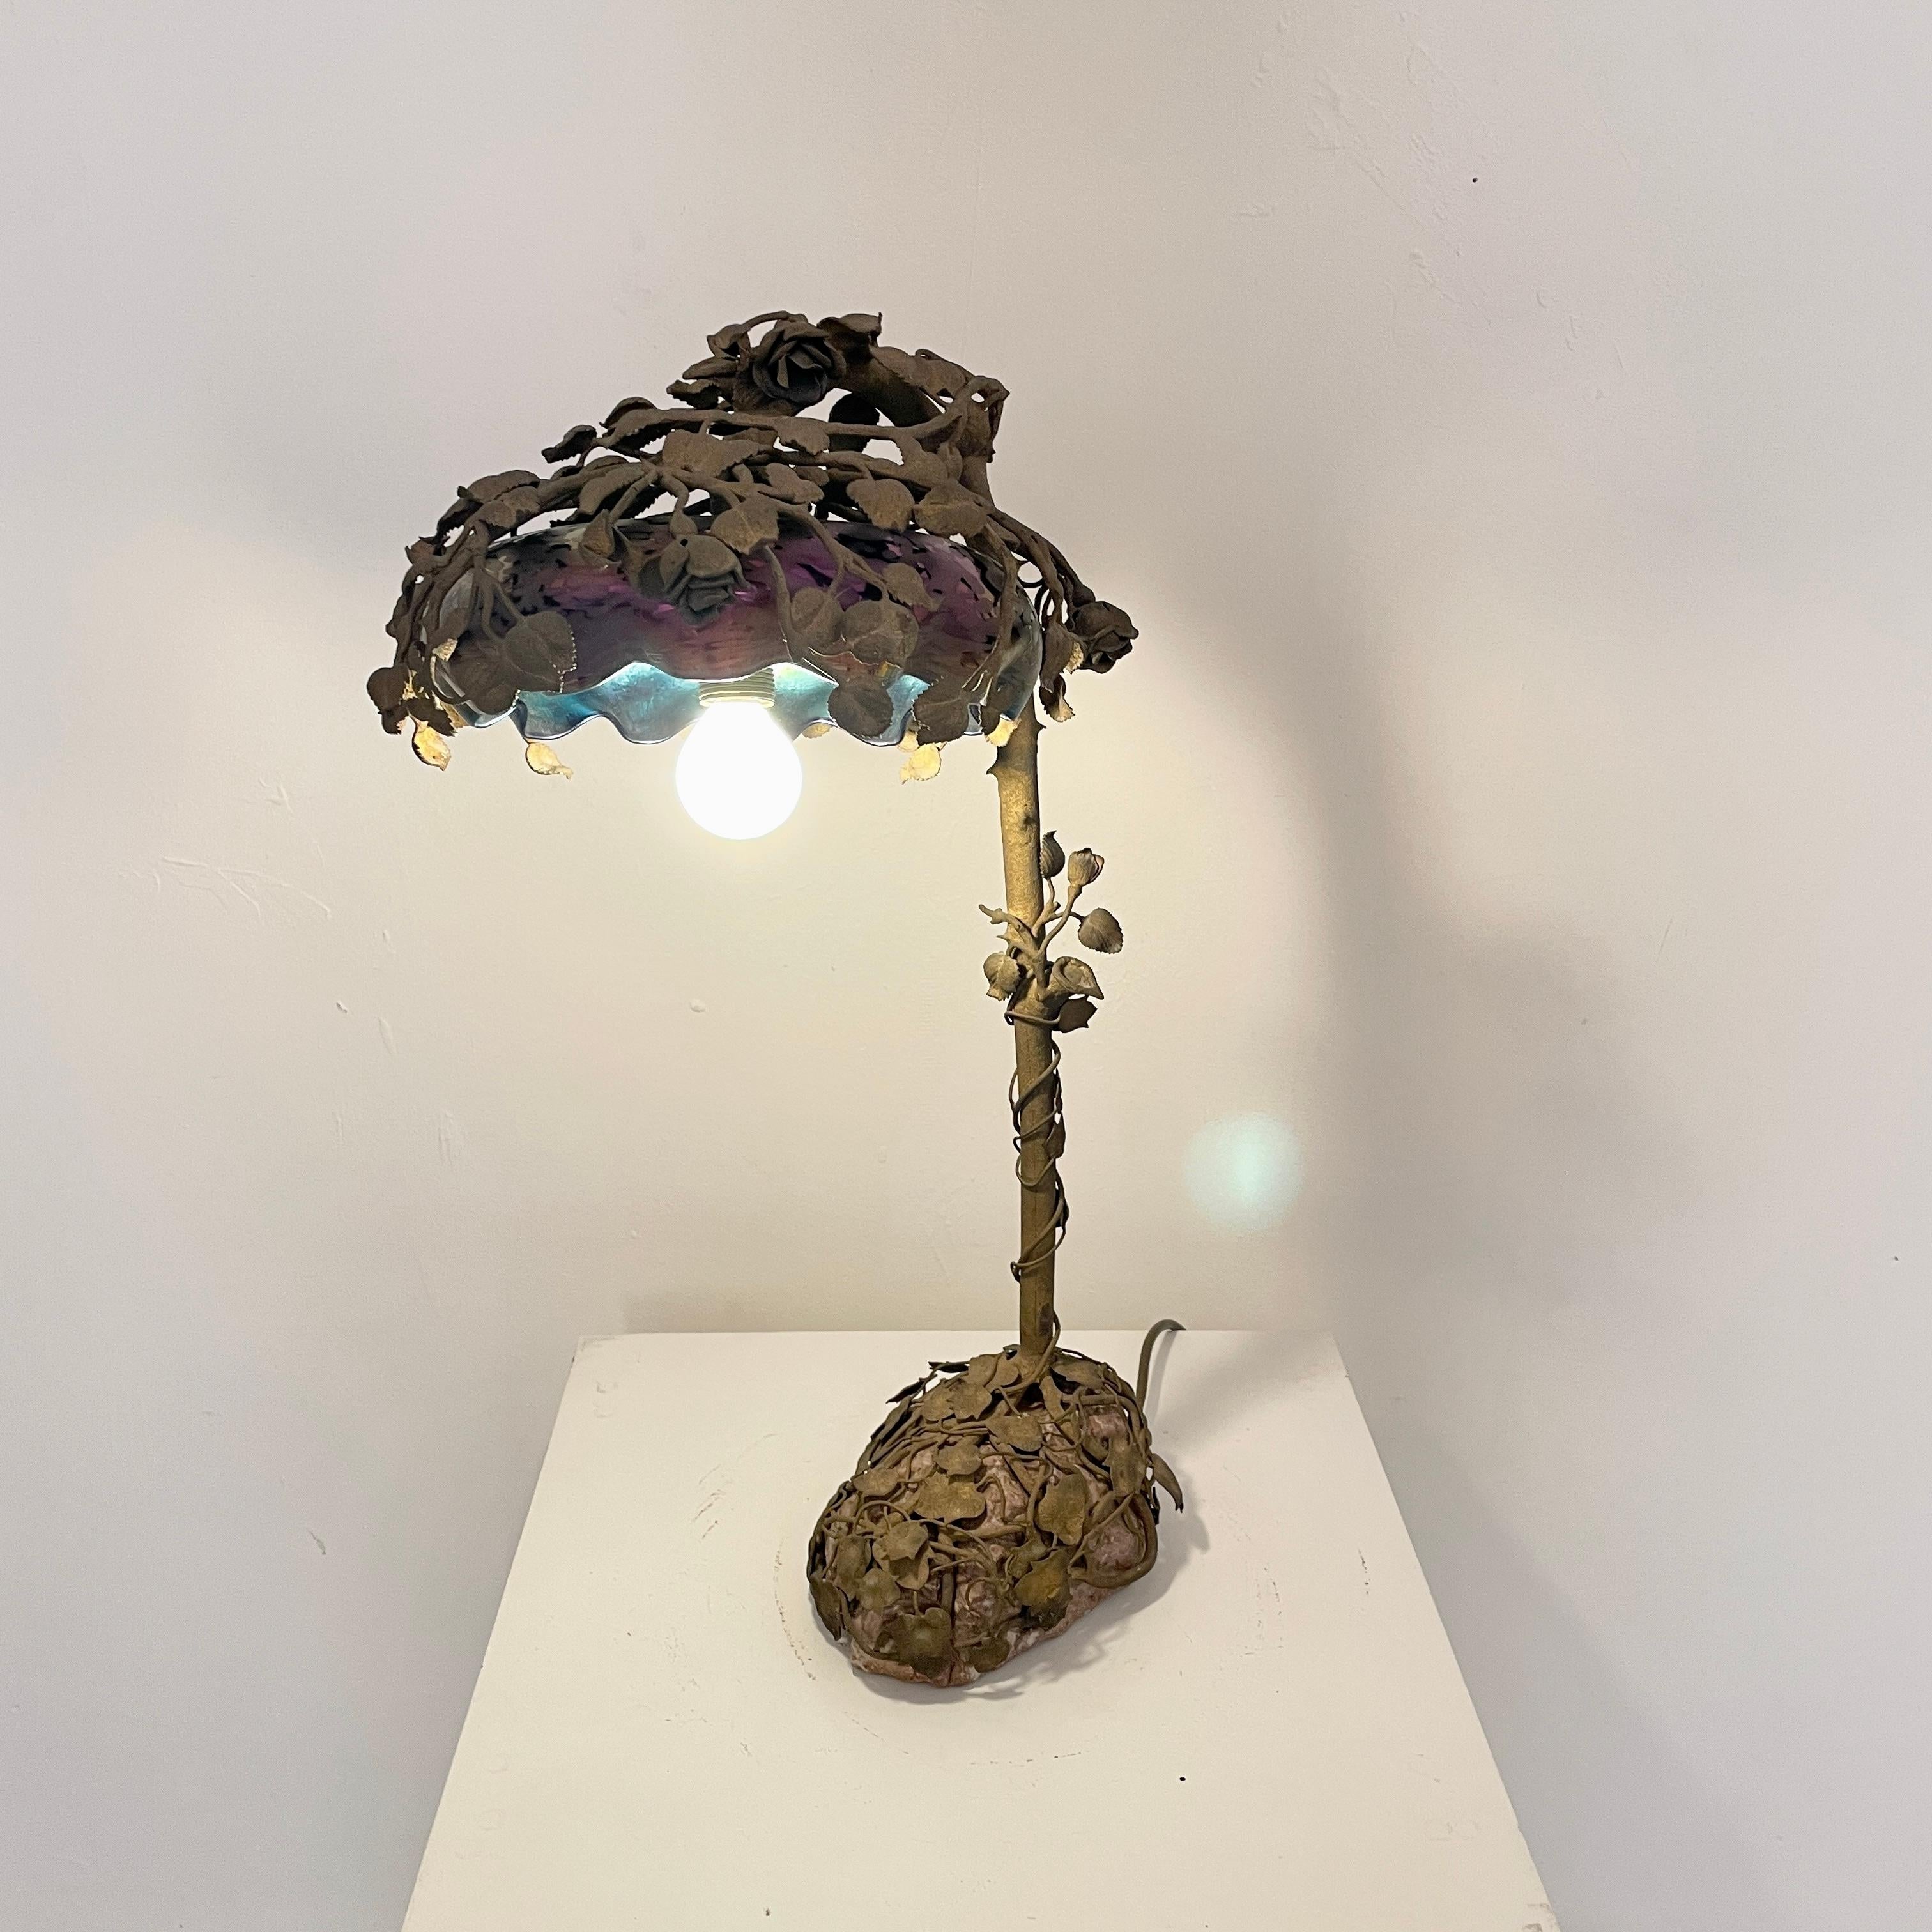 Cette lampe de table fantaisie et très rare a été fabriquée à Paris vers 1910. 
Il est coulé en bronze et représente un rosier assis sur un socle en pierre véritable. L'abat-jour est en verre émaillé. 
Un modèle magnifique et unique.
Une pièce